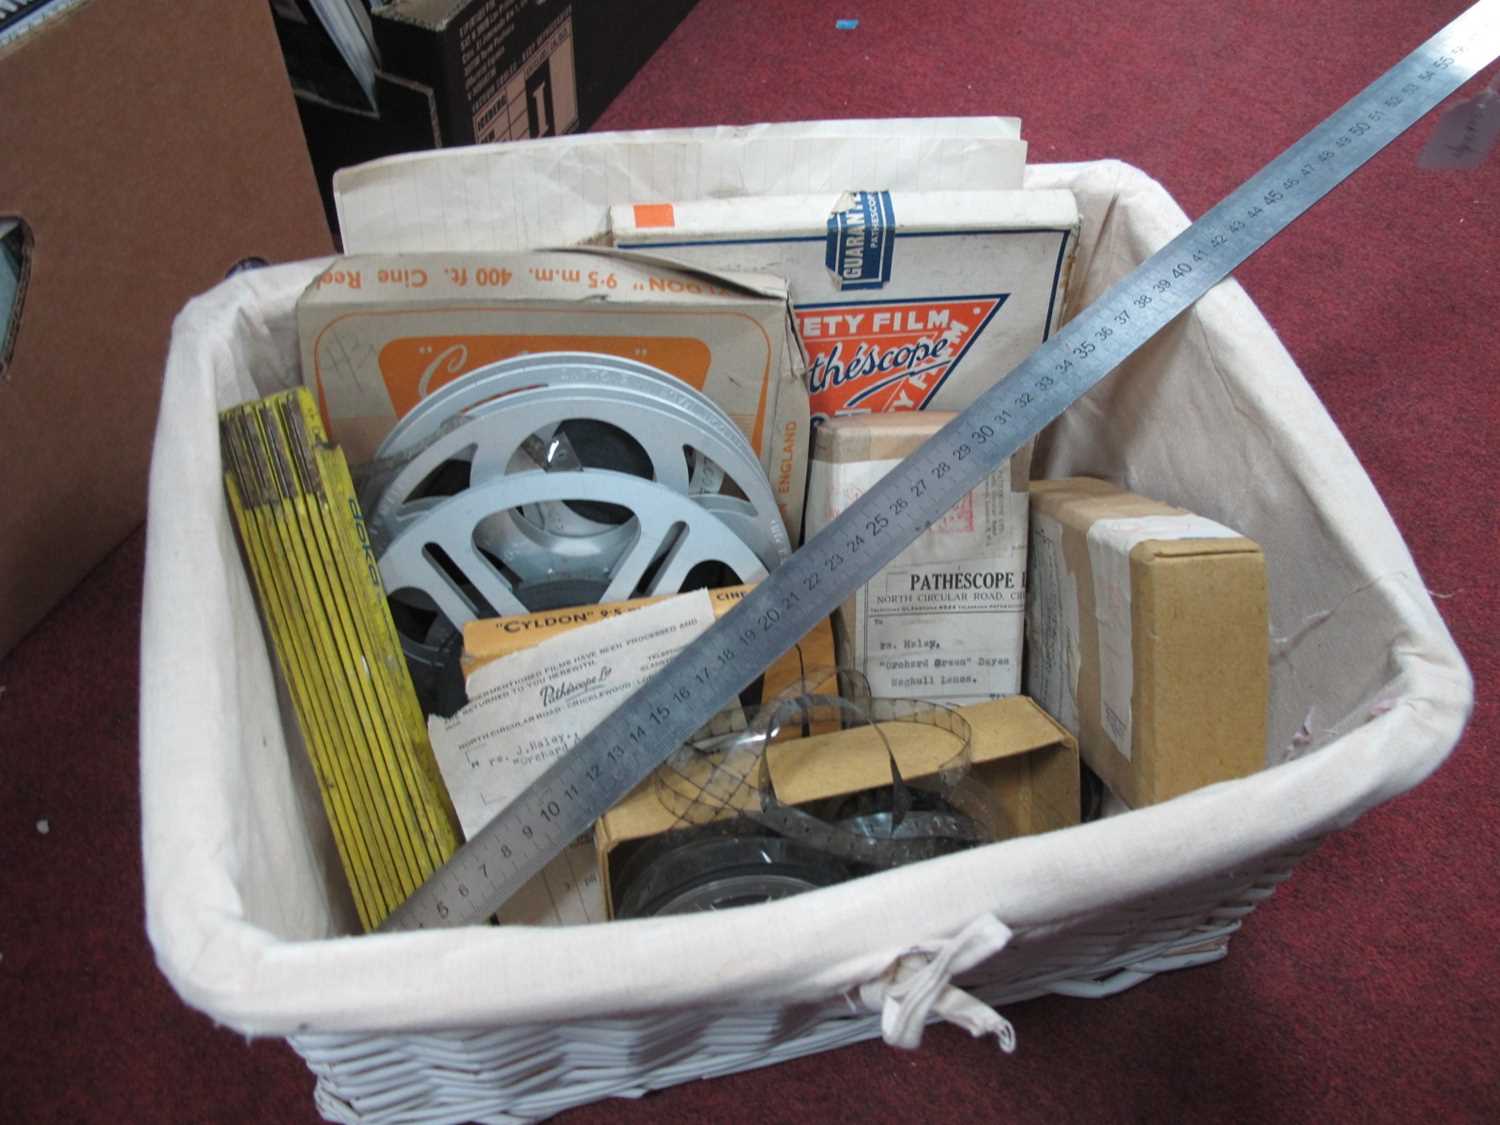 Vintage Film Cine Reels, steel ruler, Doka folding ruler, Baby Cinecamera Film box and another,